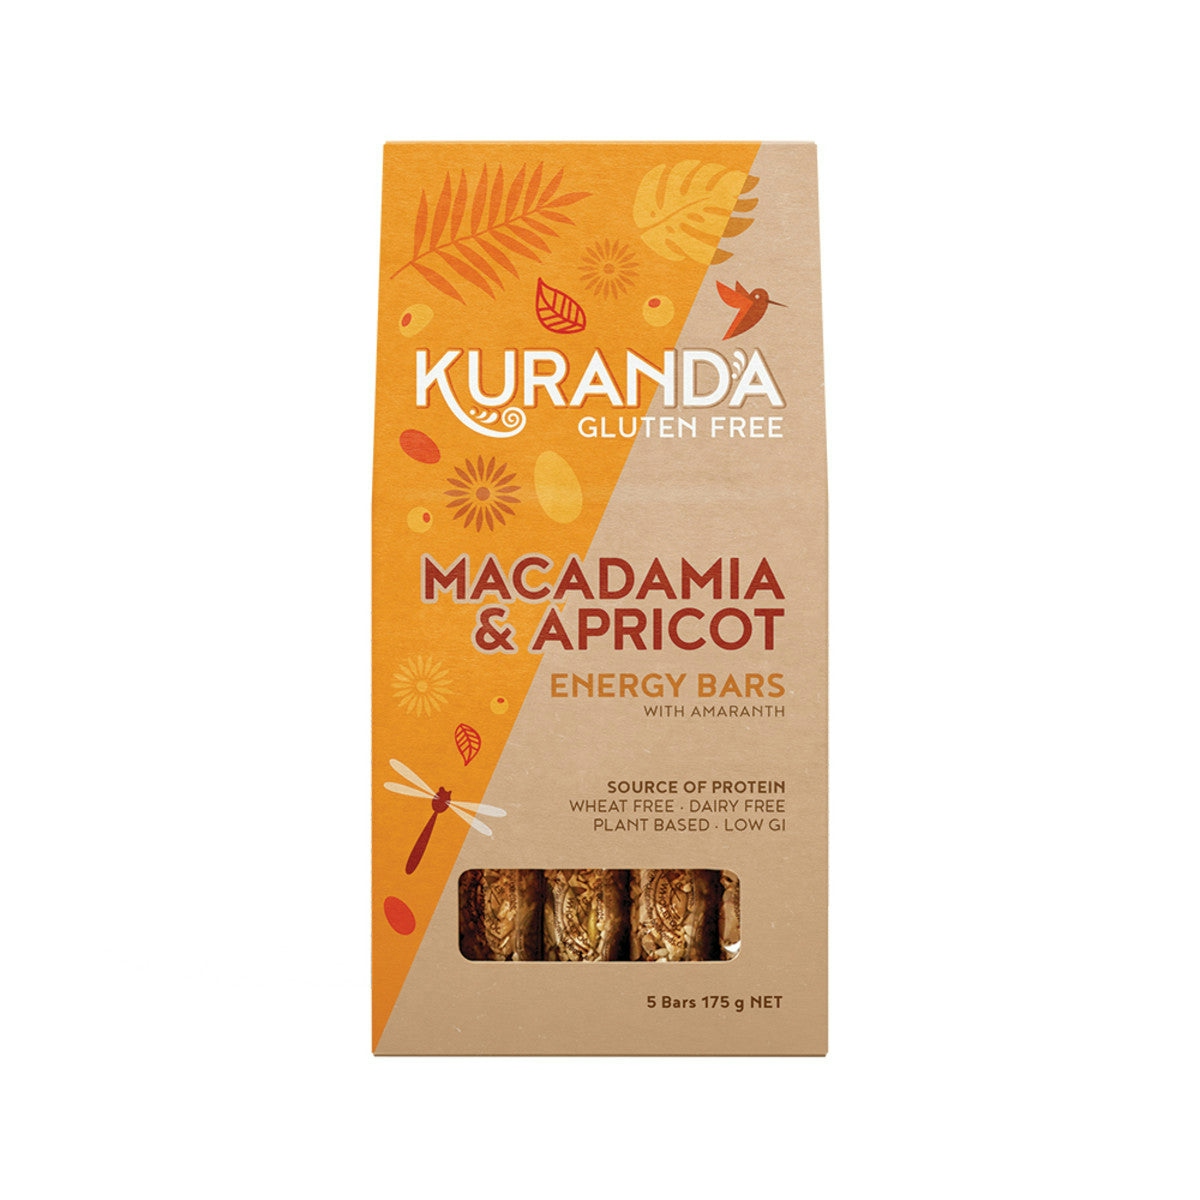 image of Kuranda Gluten Free Energy Bars Macadamia & Apricot 35g x 5 Pack on white background 